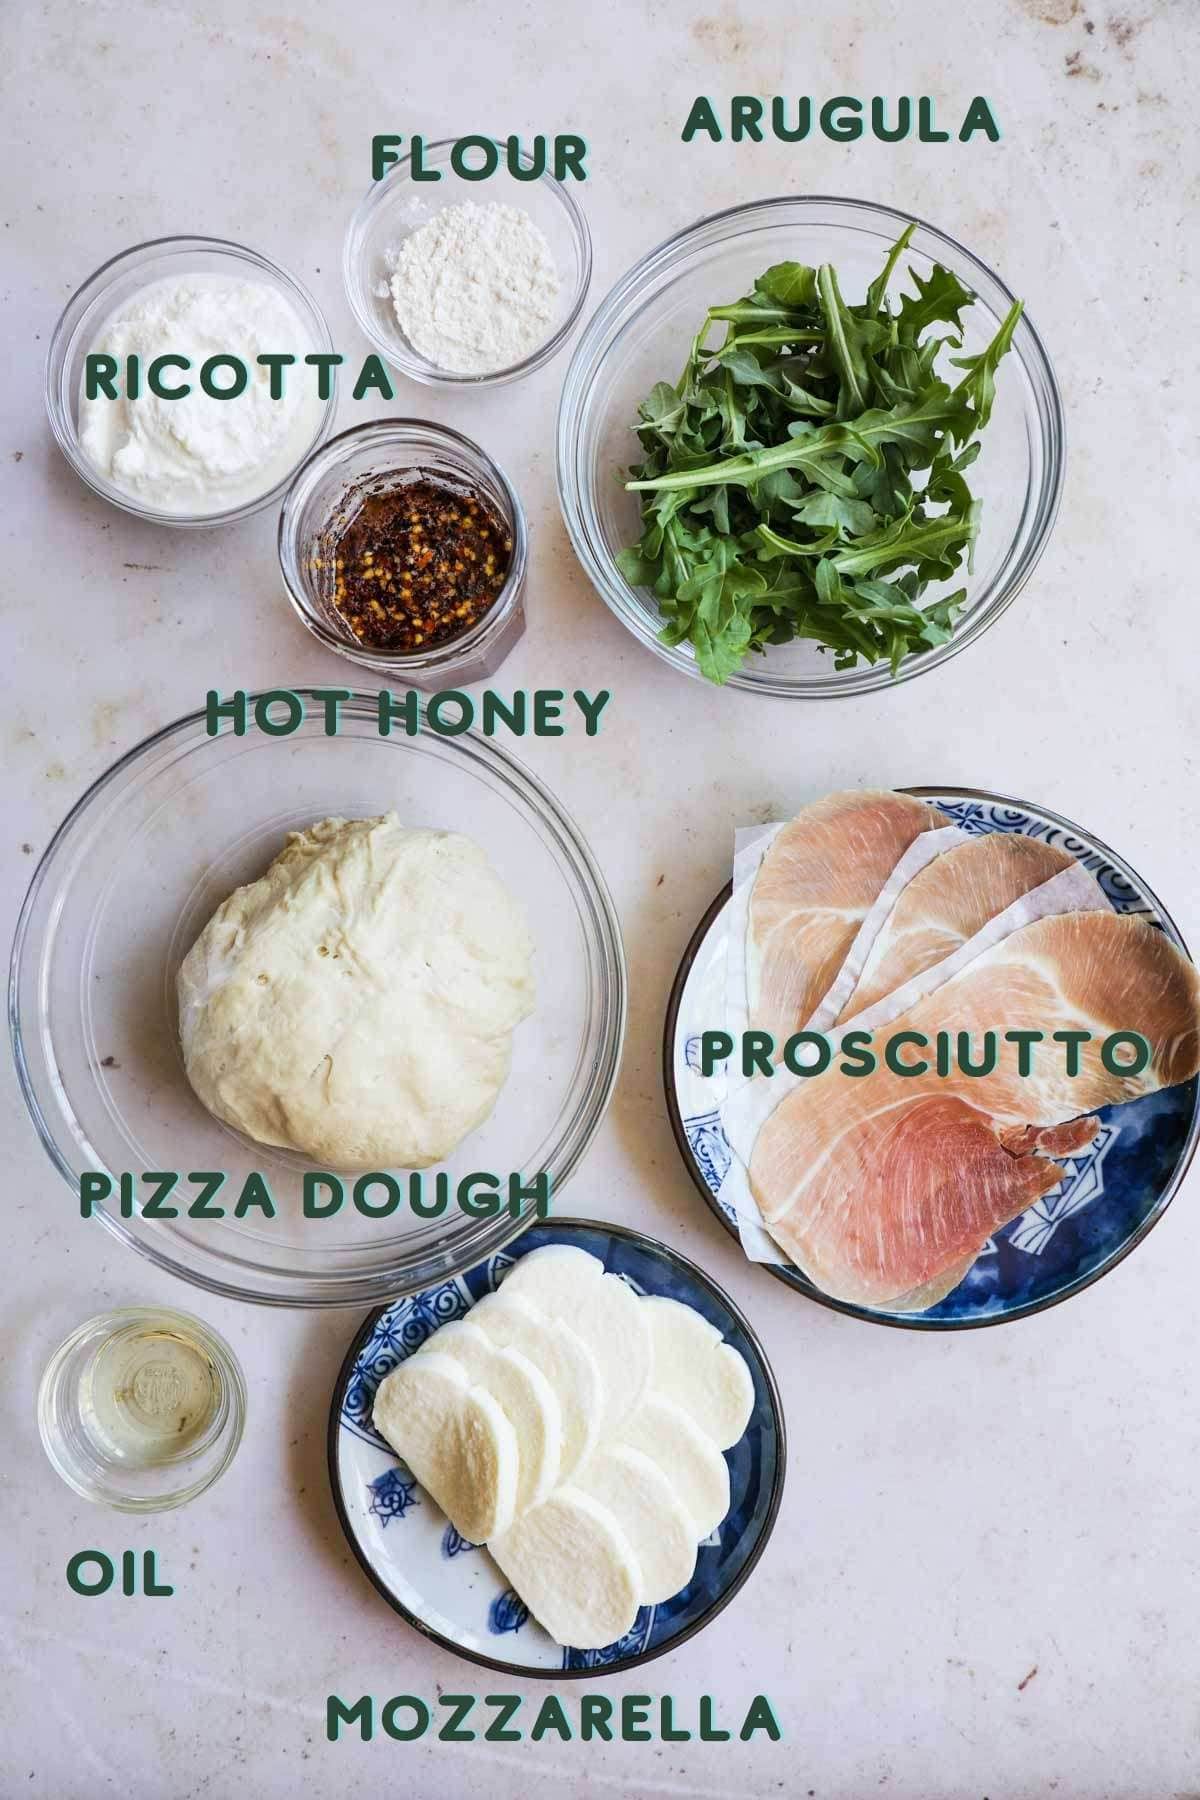 Ingredients to make pizza, including prosciutto, ricotta, arugula, pizza dough, mozzarella, flour, oil, and hot honey.